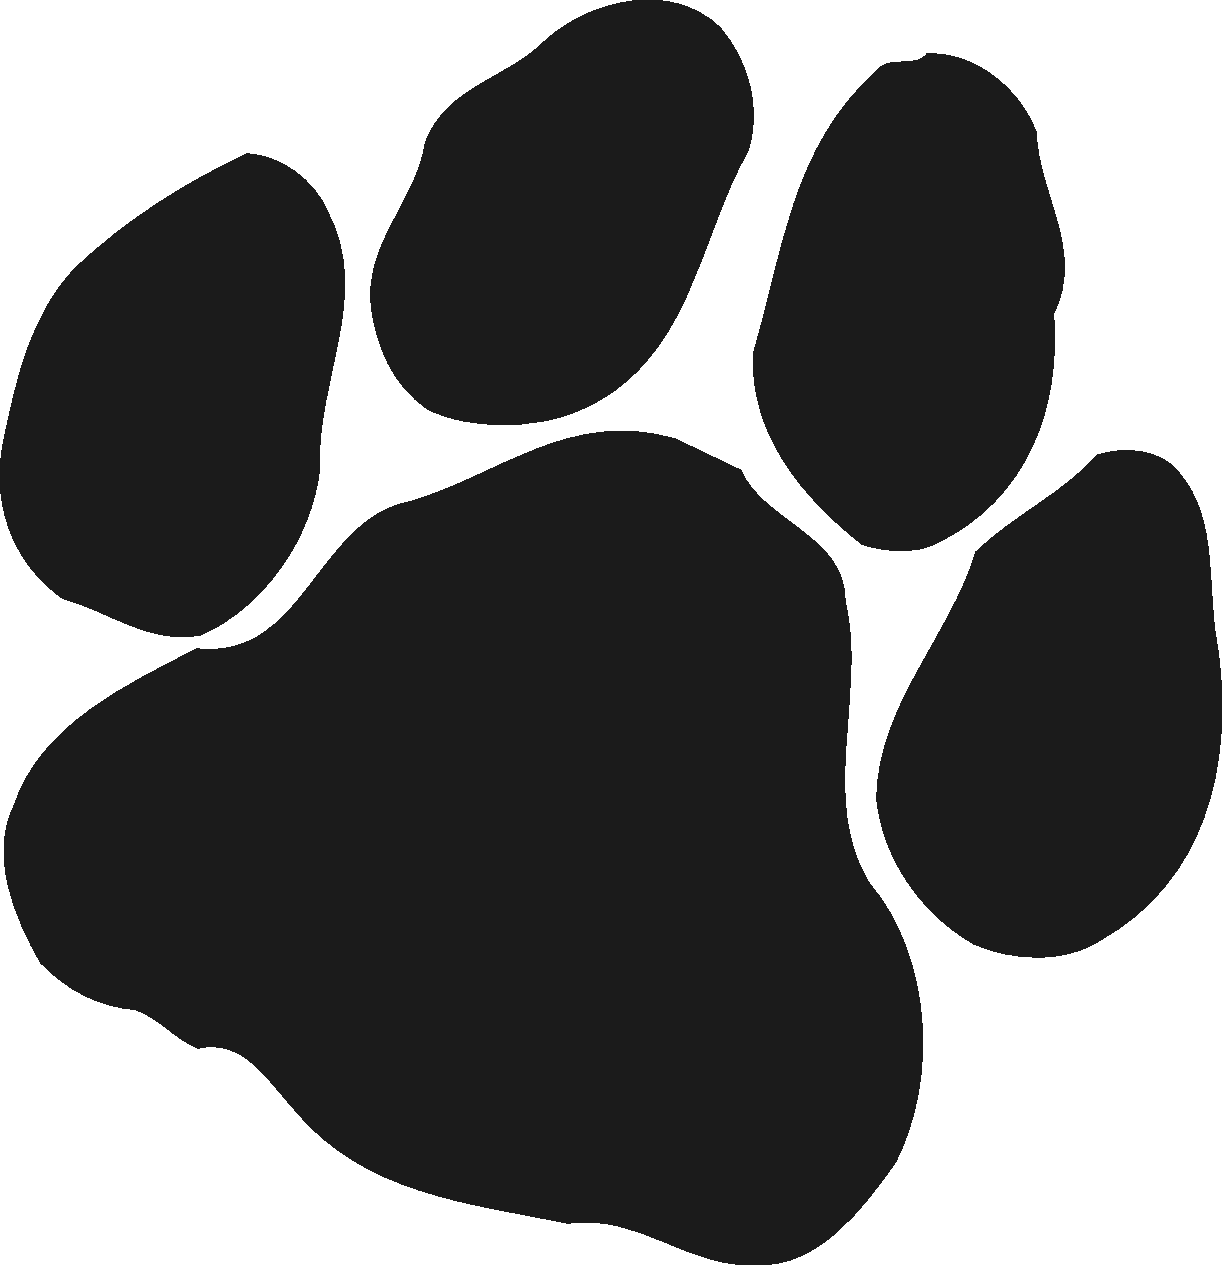 Paw Print Logo - Panther Paw Print Logo free image